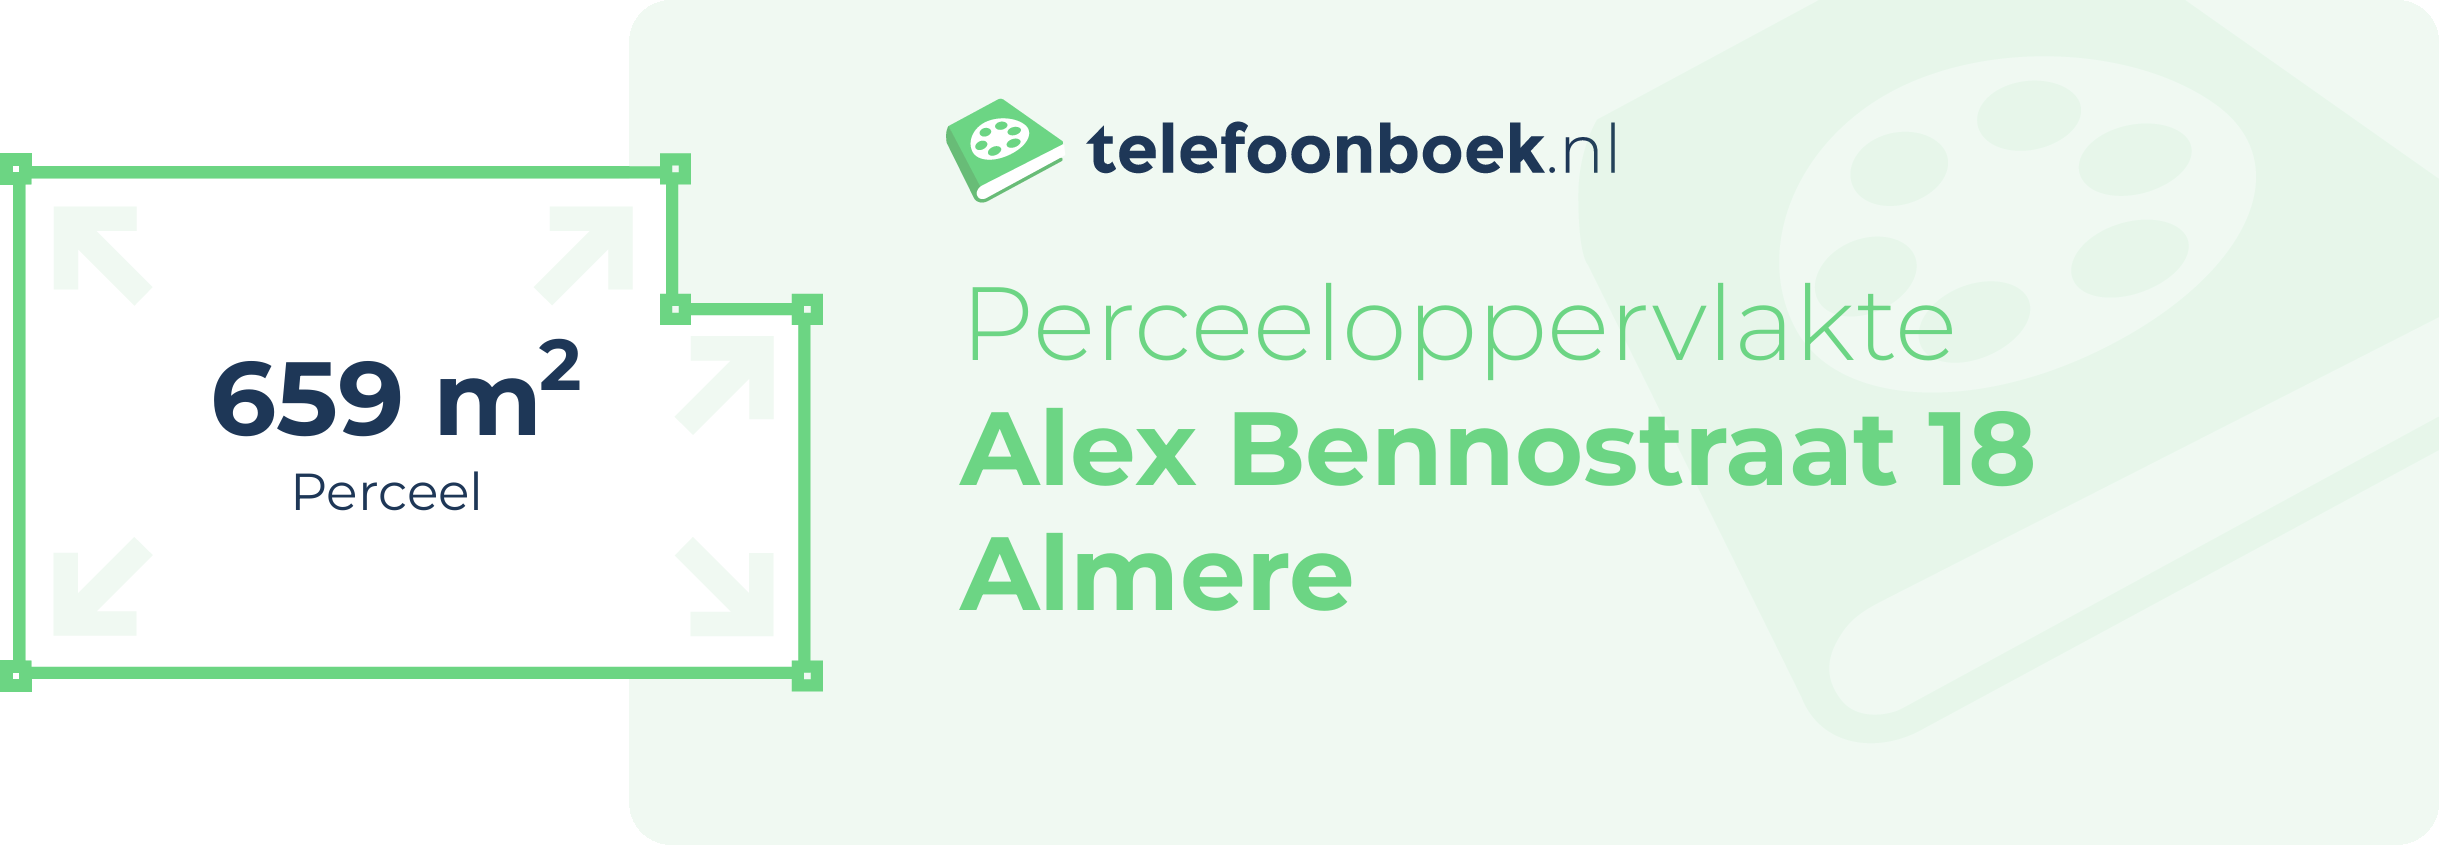 Perceeloppervlakte Alex Bennostraat 18 Almere